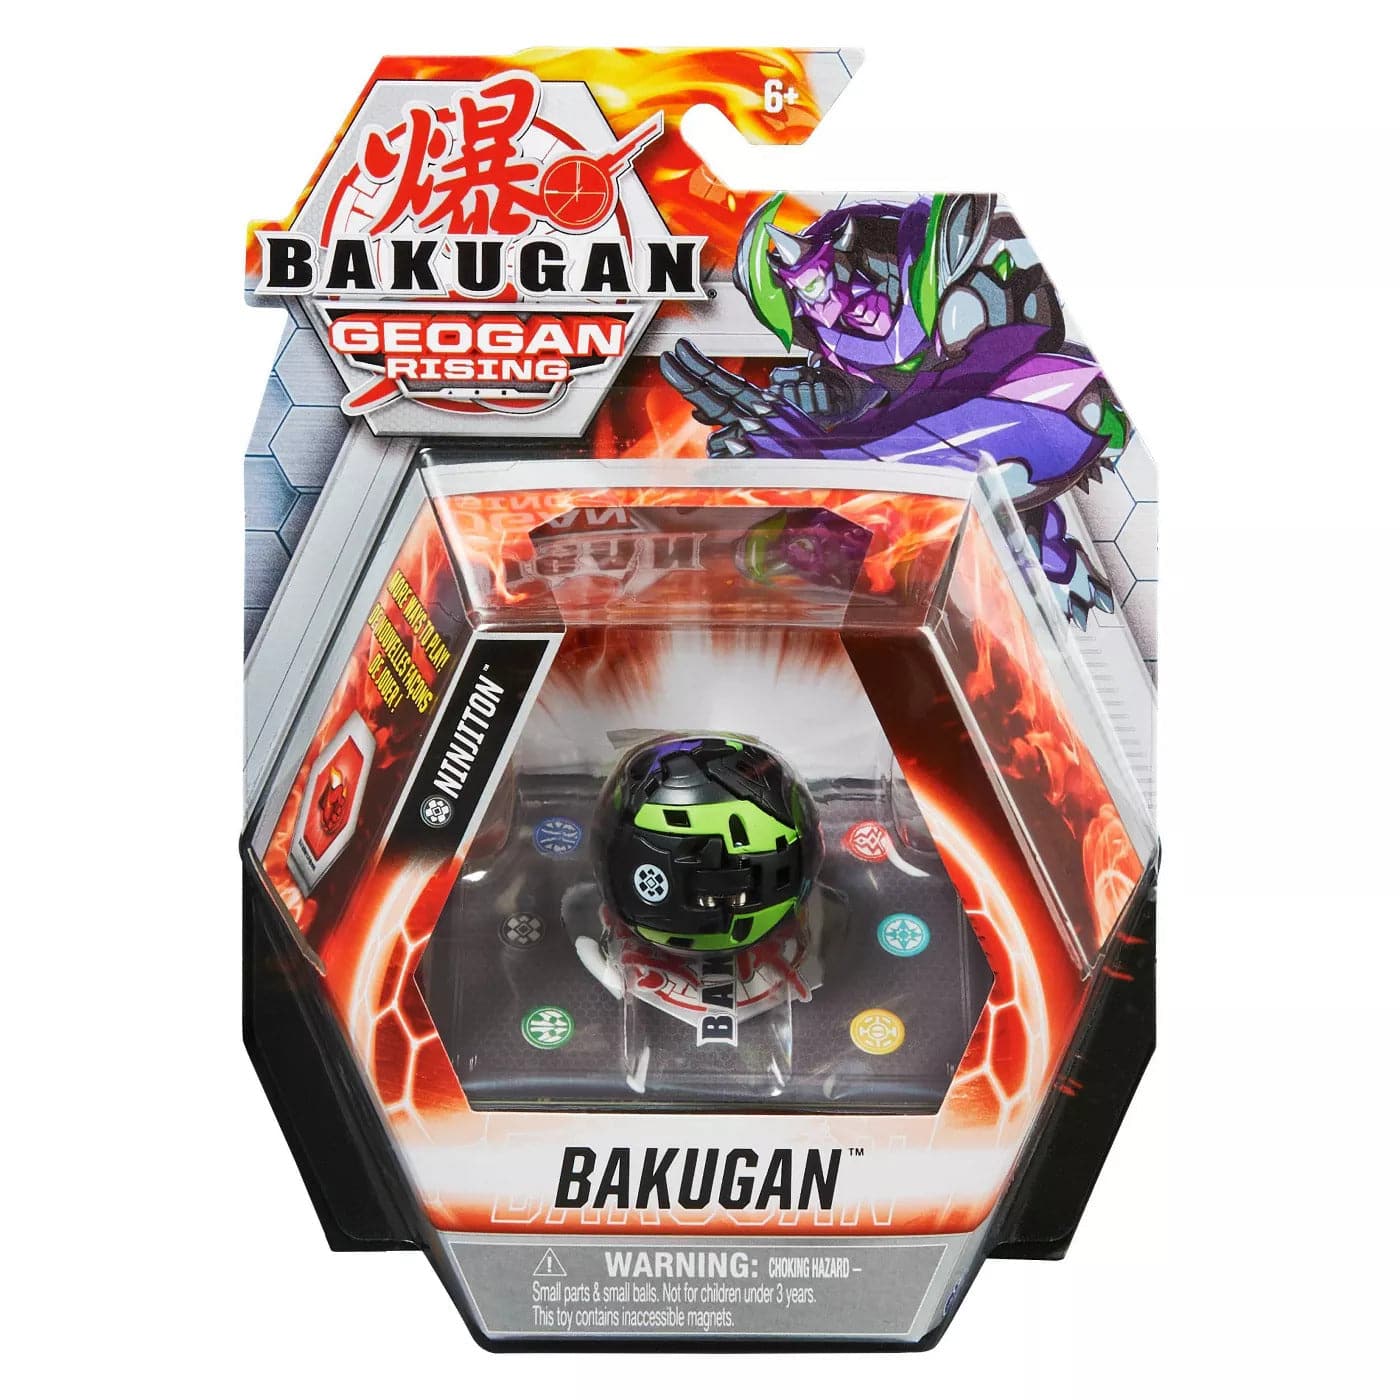 Bakugan: Geogan Rising - Bakugan Core Ball Pack S3 Assortment